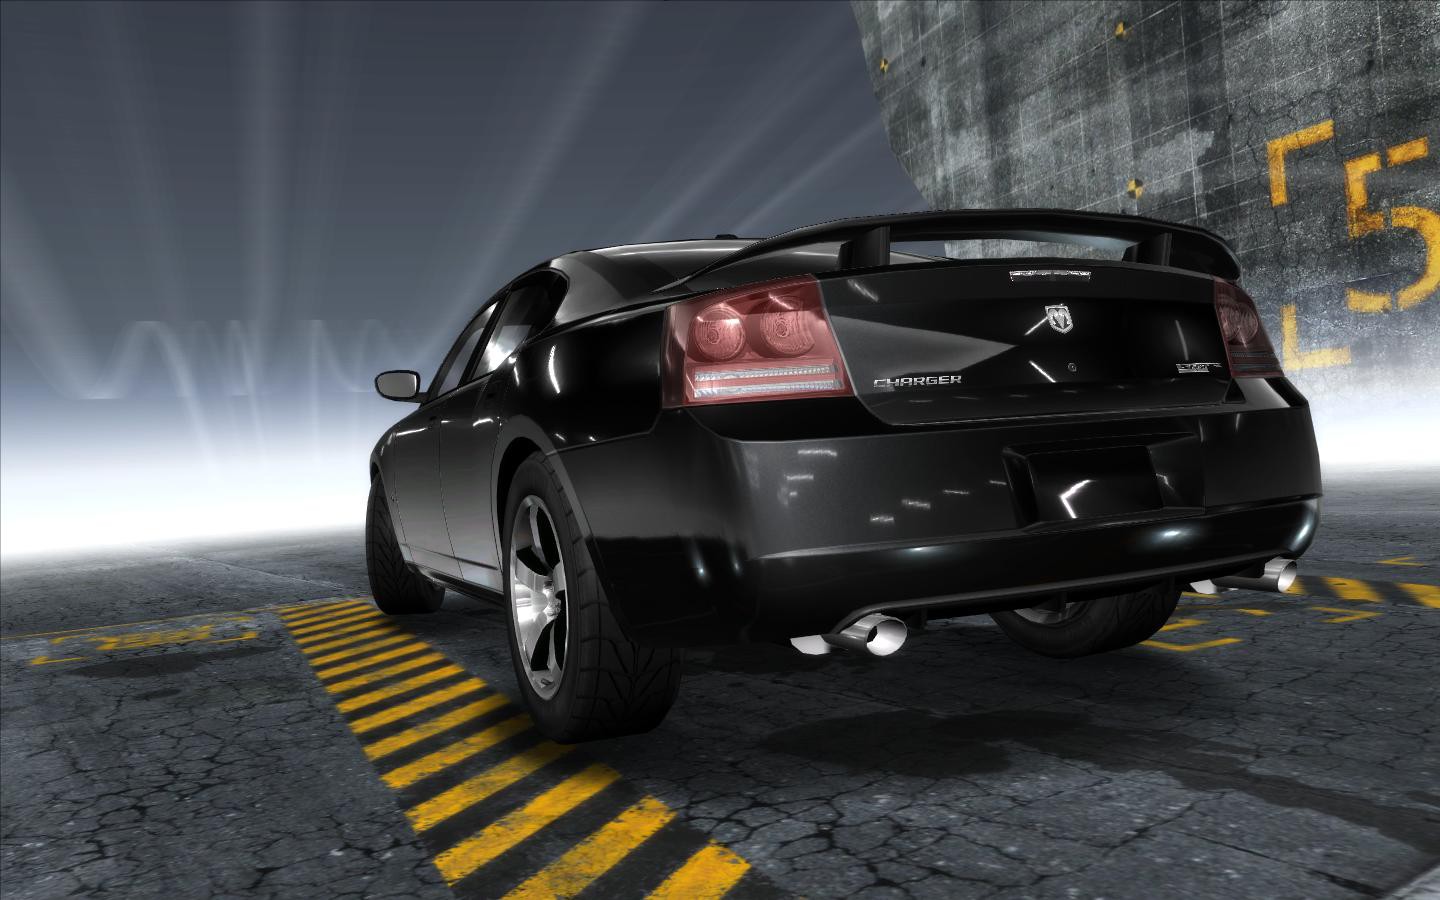 Nfs mods cars. Need for Speed Carbon dodge Charger srt8. Dodge Charger srt8 в нфс. Додж Чарджер NFS. Dodge Charger srt8 Police NFS.